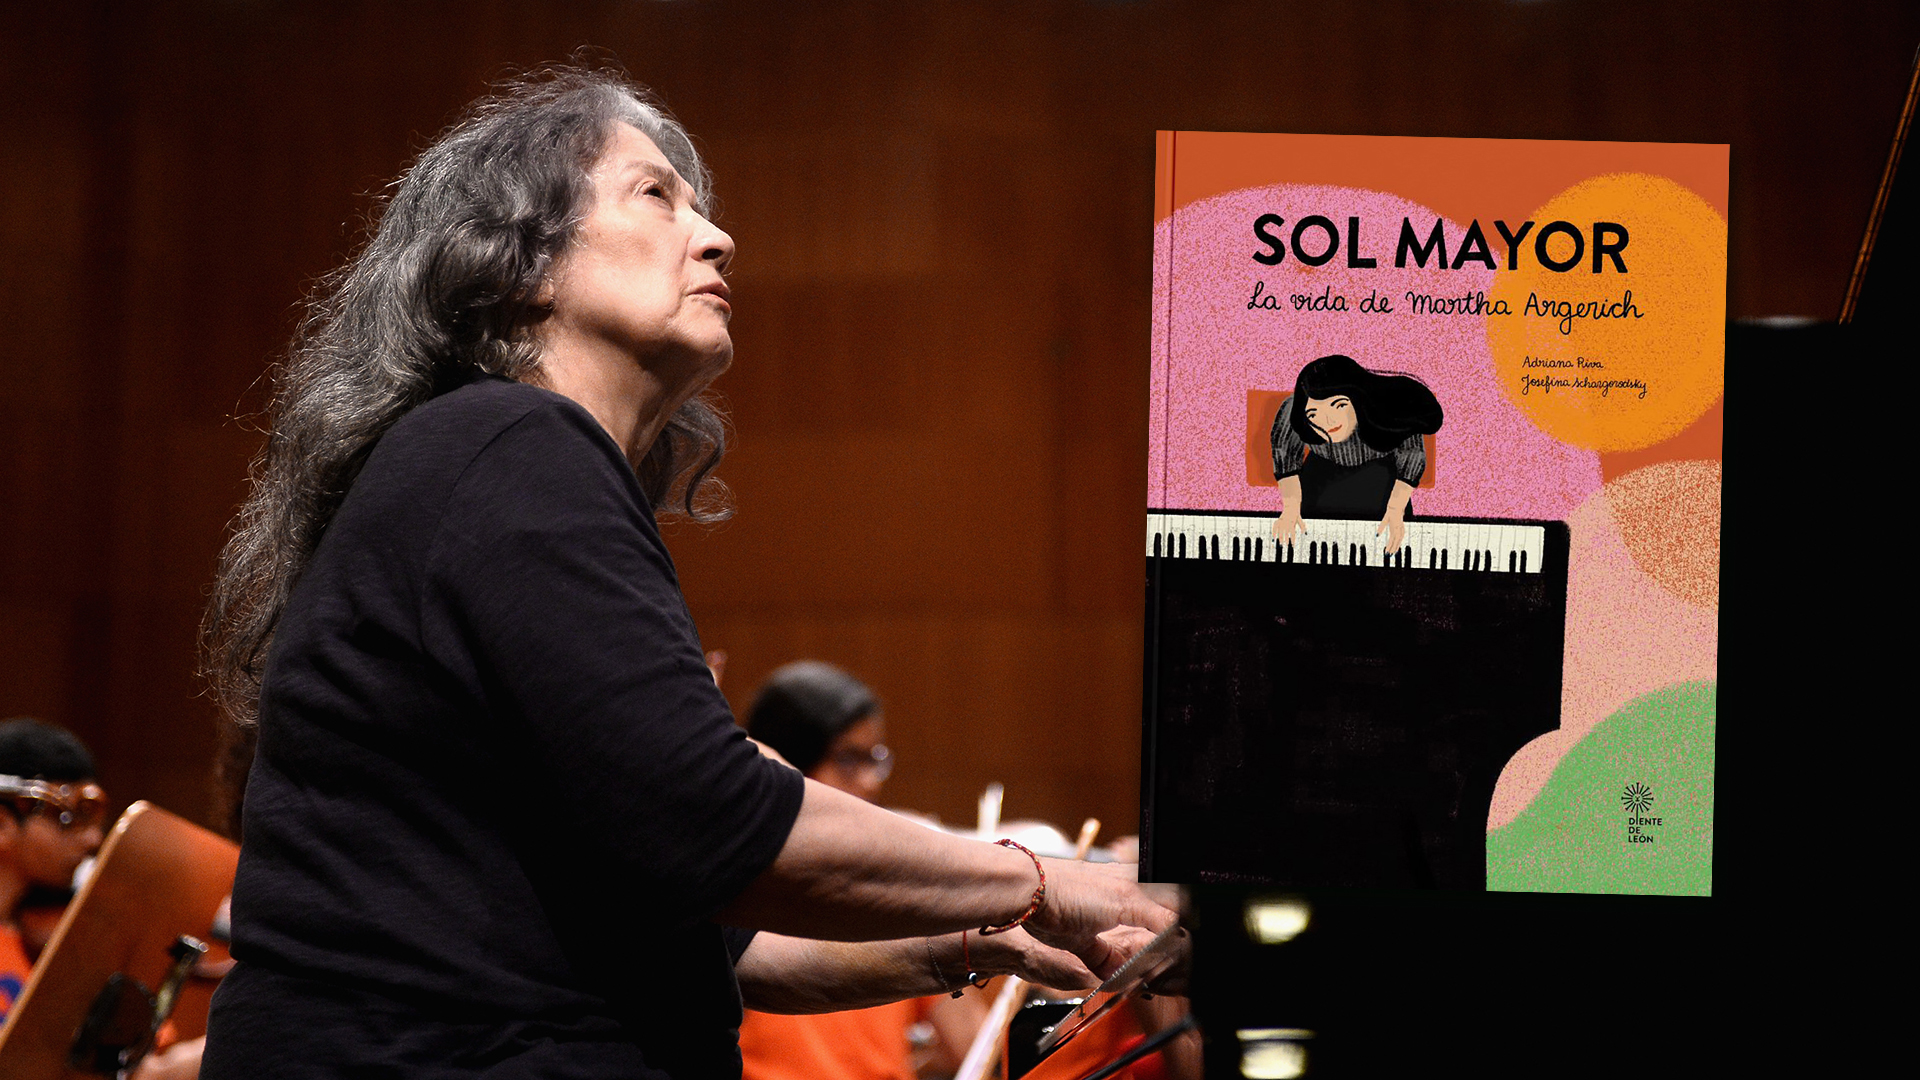 Por primera vez un libro infantil cuenta la historia de Martha Argerich, “la pianista más extraordinaria de todos los tiempos”.